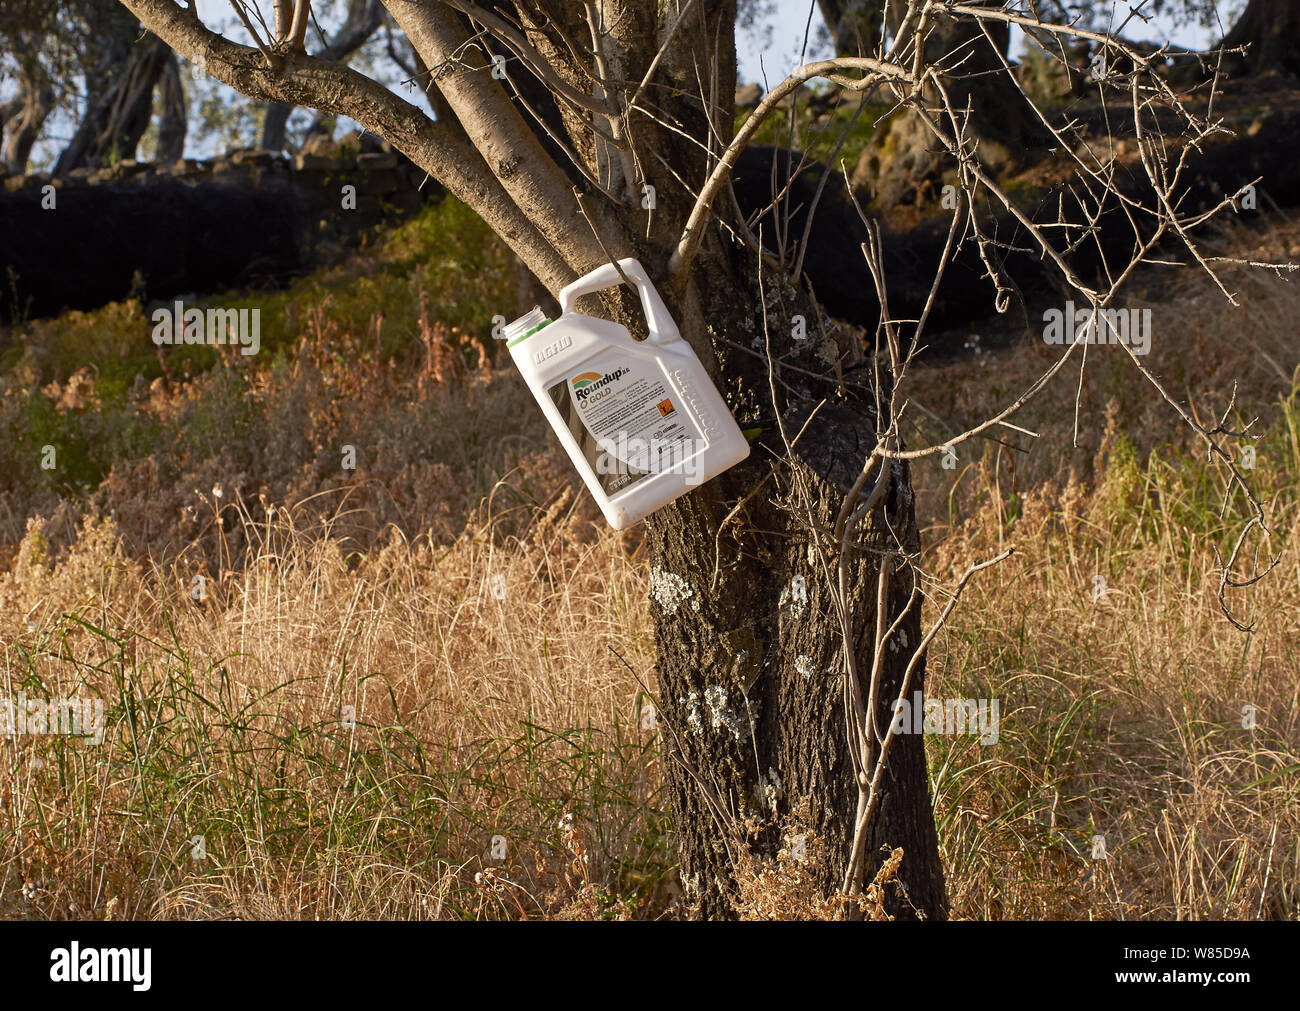 'Roundup' herbicida se usa extensamente en los olivares, matando a los insectos y la vegetación, Corfú, en Grecia, en mayo. Foto de stock